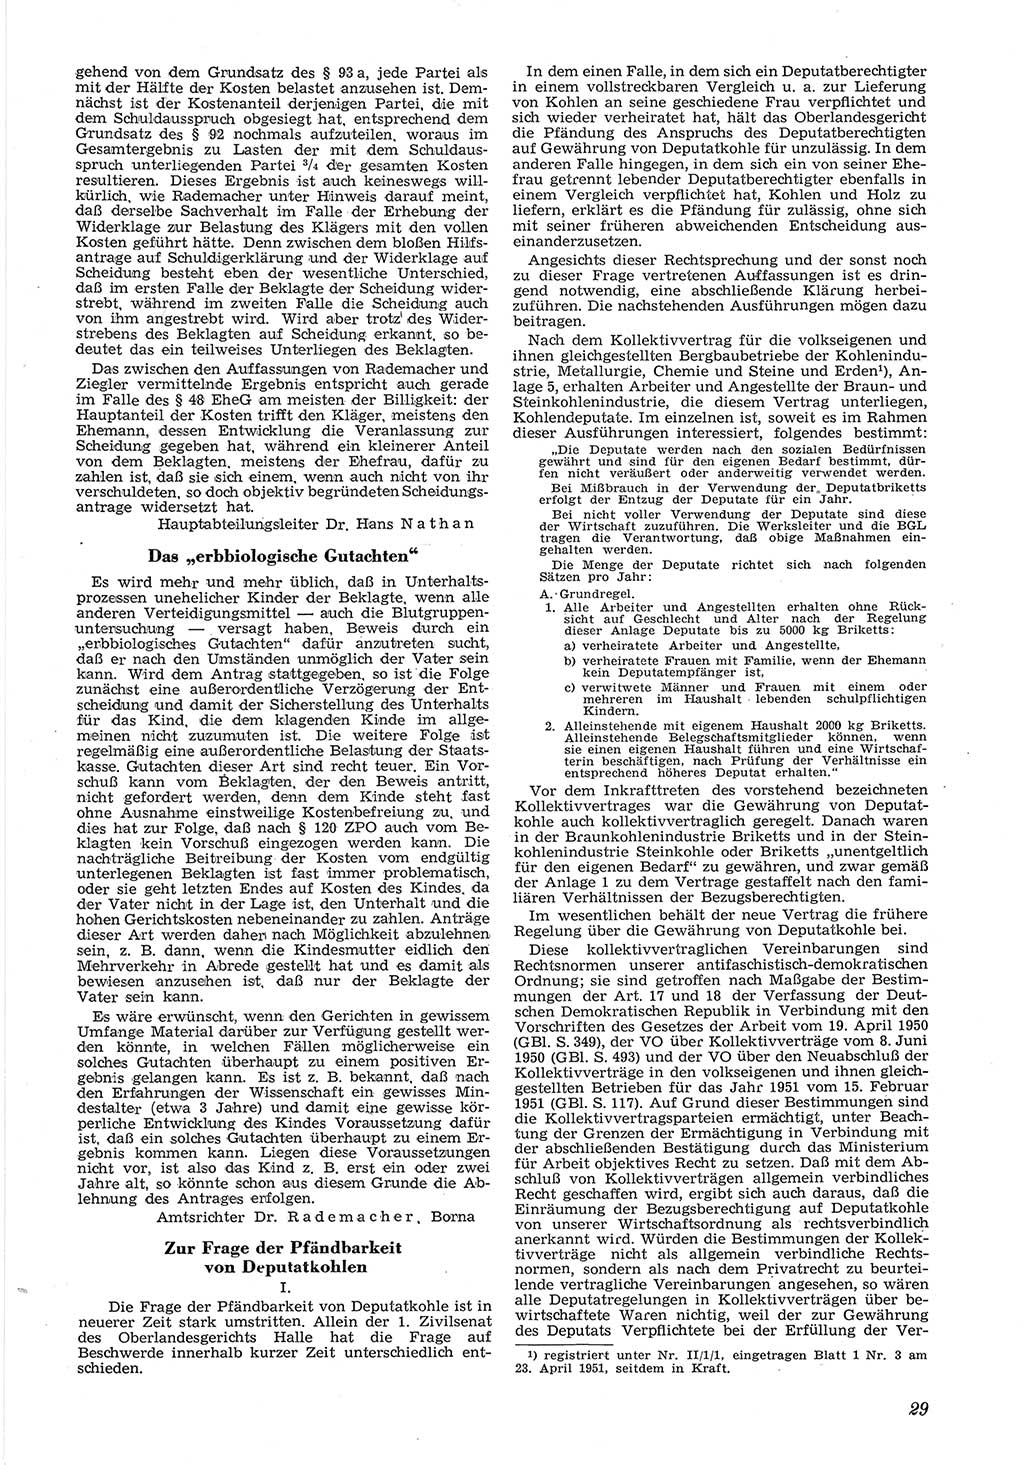 Neue Justiz (NJ), Zeitschrift für Recht und Rechtswissenschaft [Deutsche Demokratische Republik (DDR)], 6. Jahrgang 1952, Seite 29 (NJ DDR 1952, S. 29)